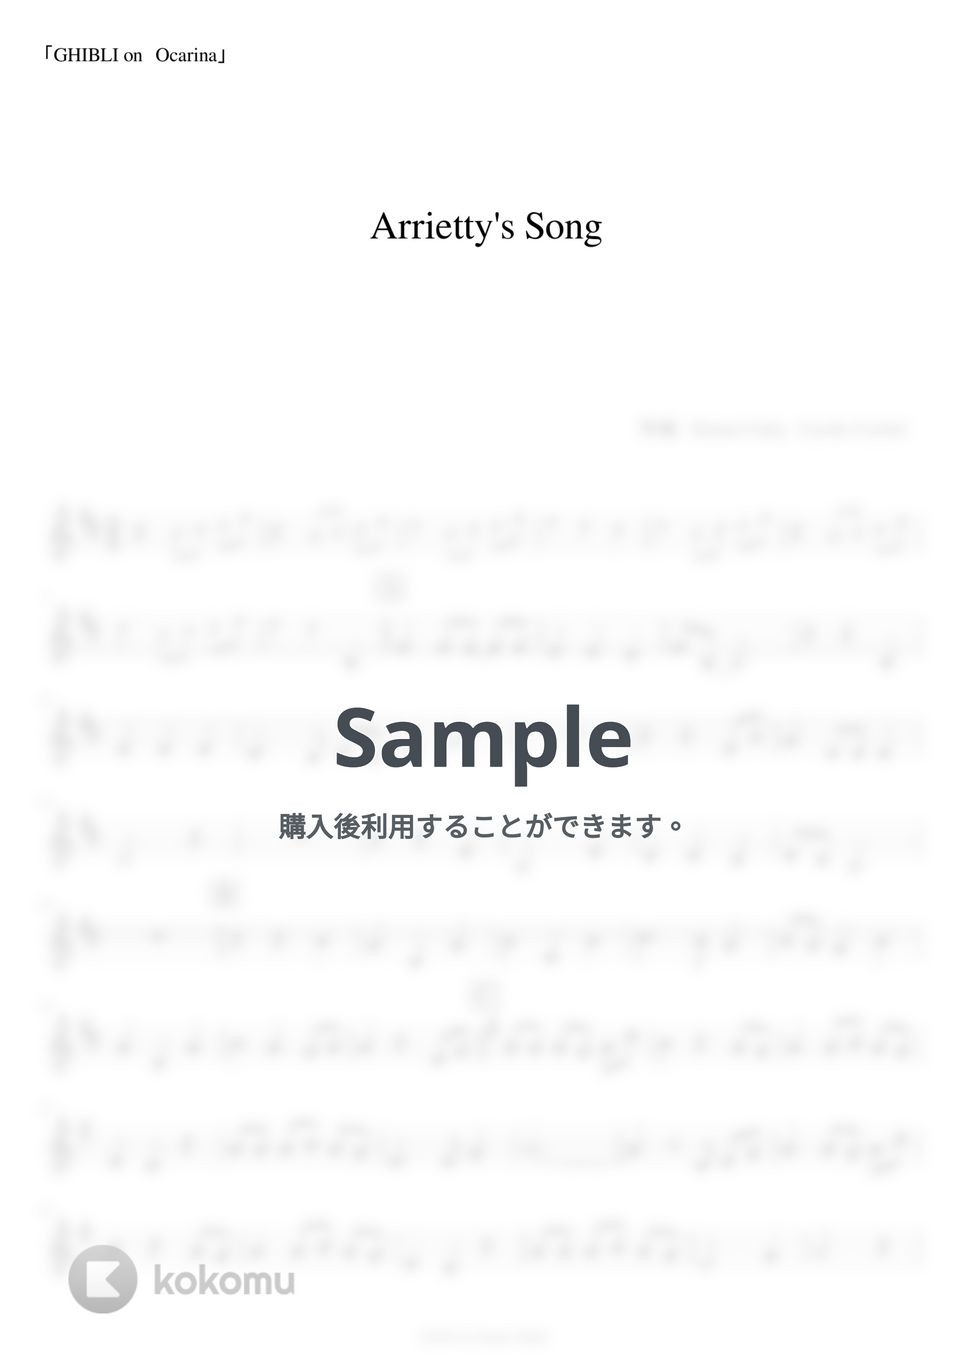 借りぐらしのアリエッティ - Arrietty's Song (オカリナ用メロディー譜) by もりたあいか